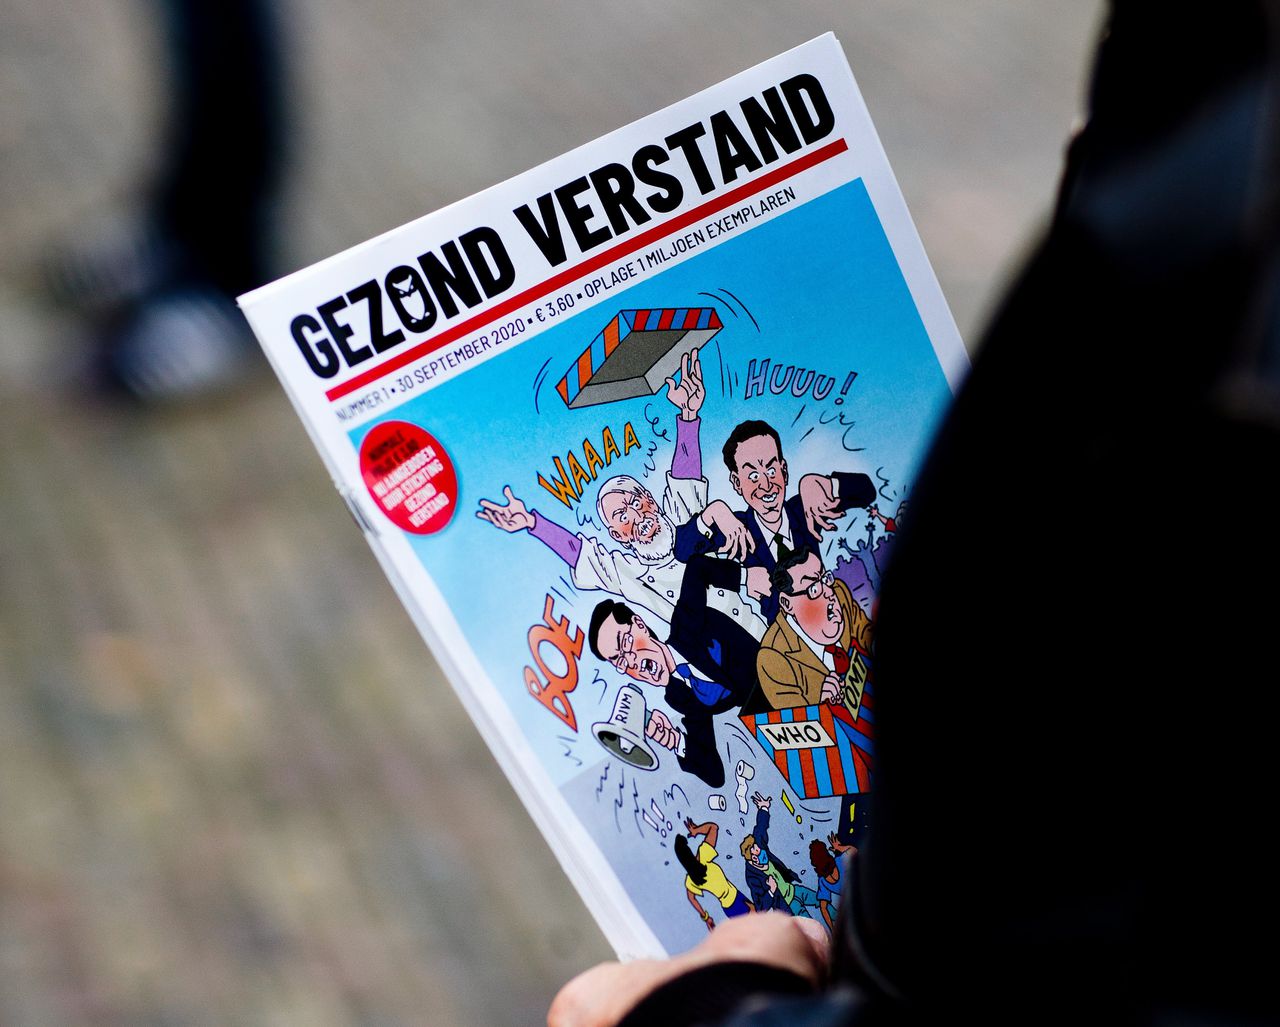 Het eerste nummer van Gezond Verstand in handen van een demonstrant tijdens een protest tegen het coronabeleid in Den Haag.